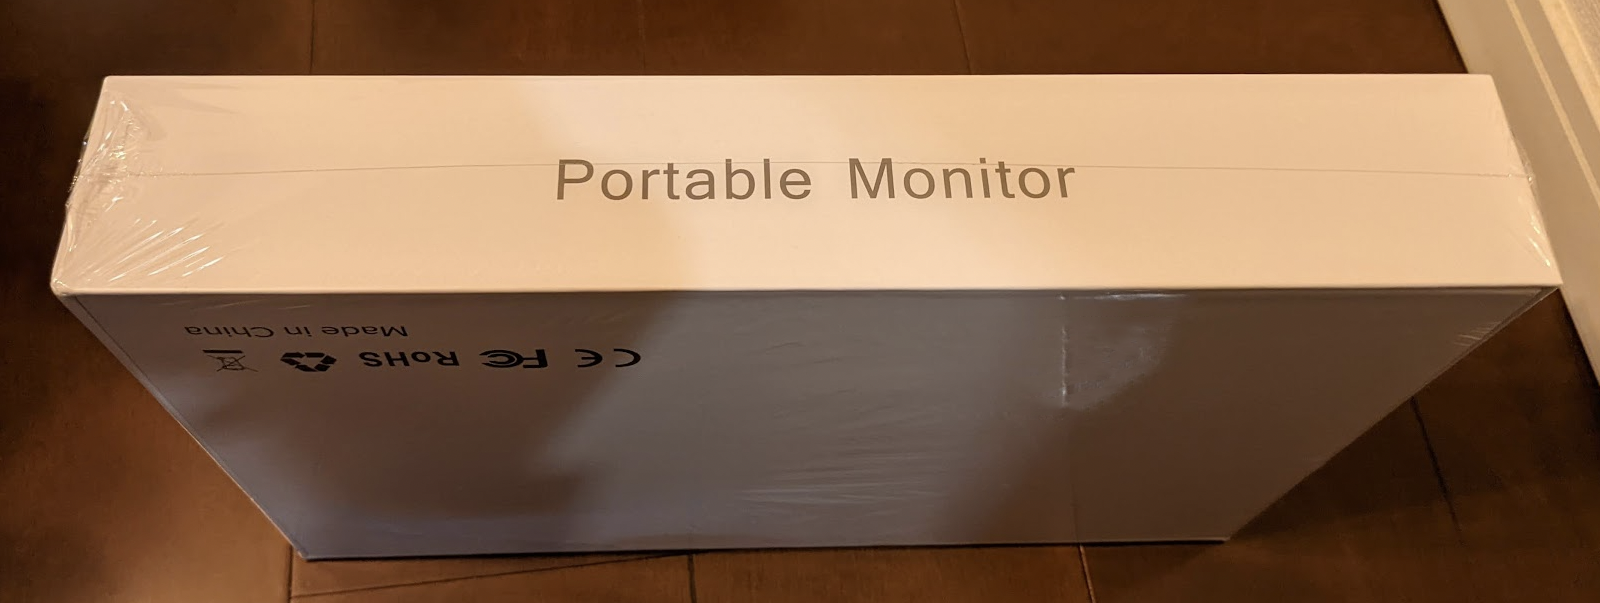 EVICIV(エビシブ) Portable Monitor(ポータブルモニター) パッケージ